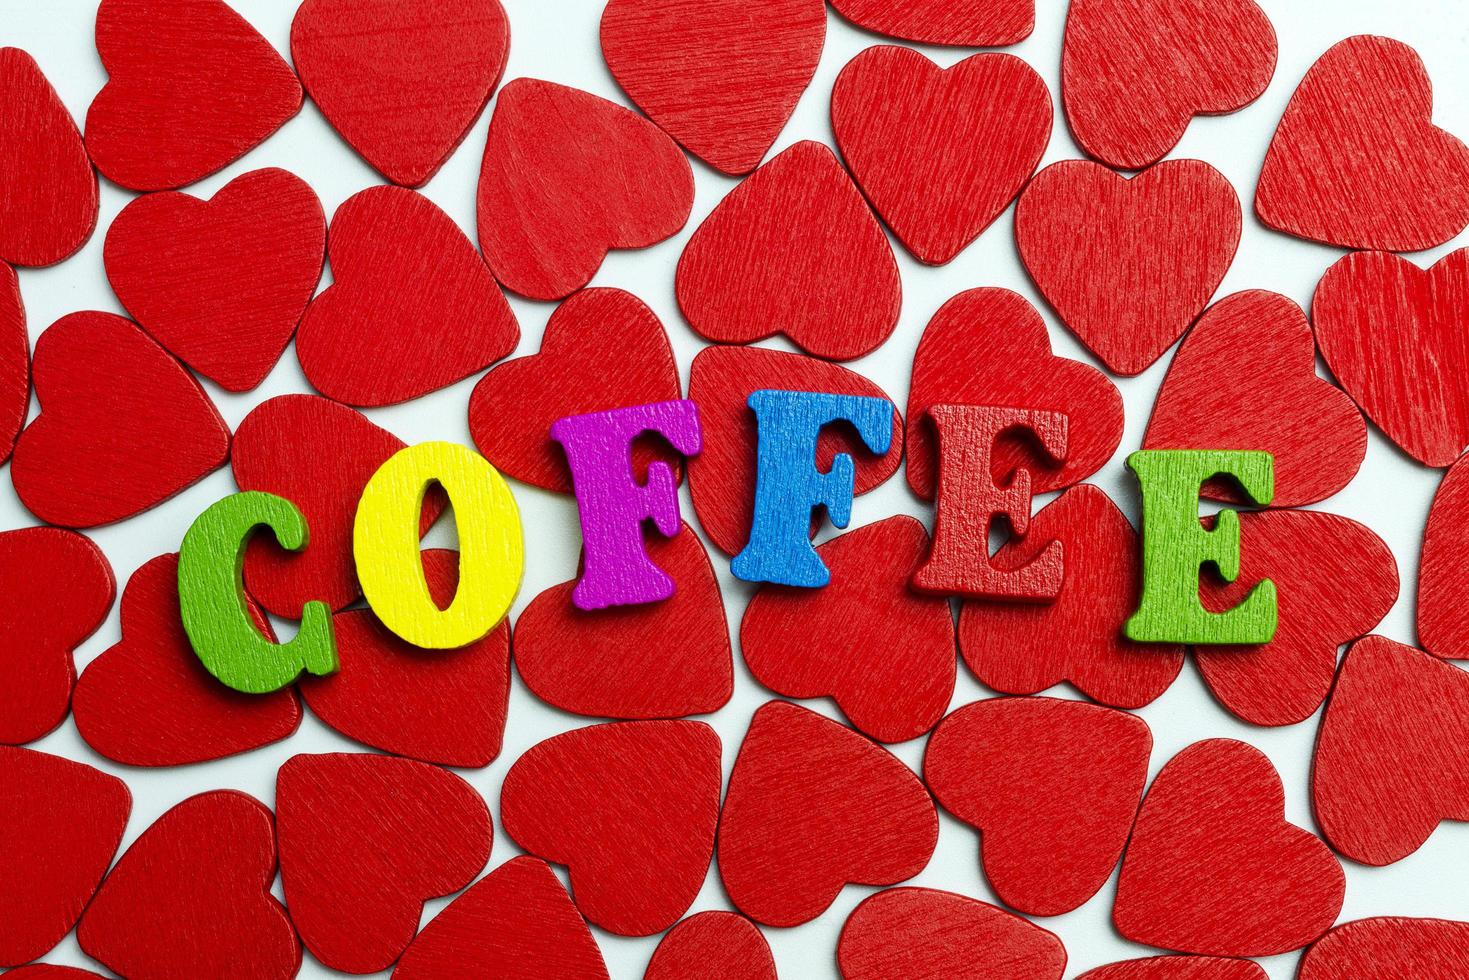 ordet kaffe läggs ut på hjärtan. foto